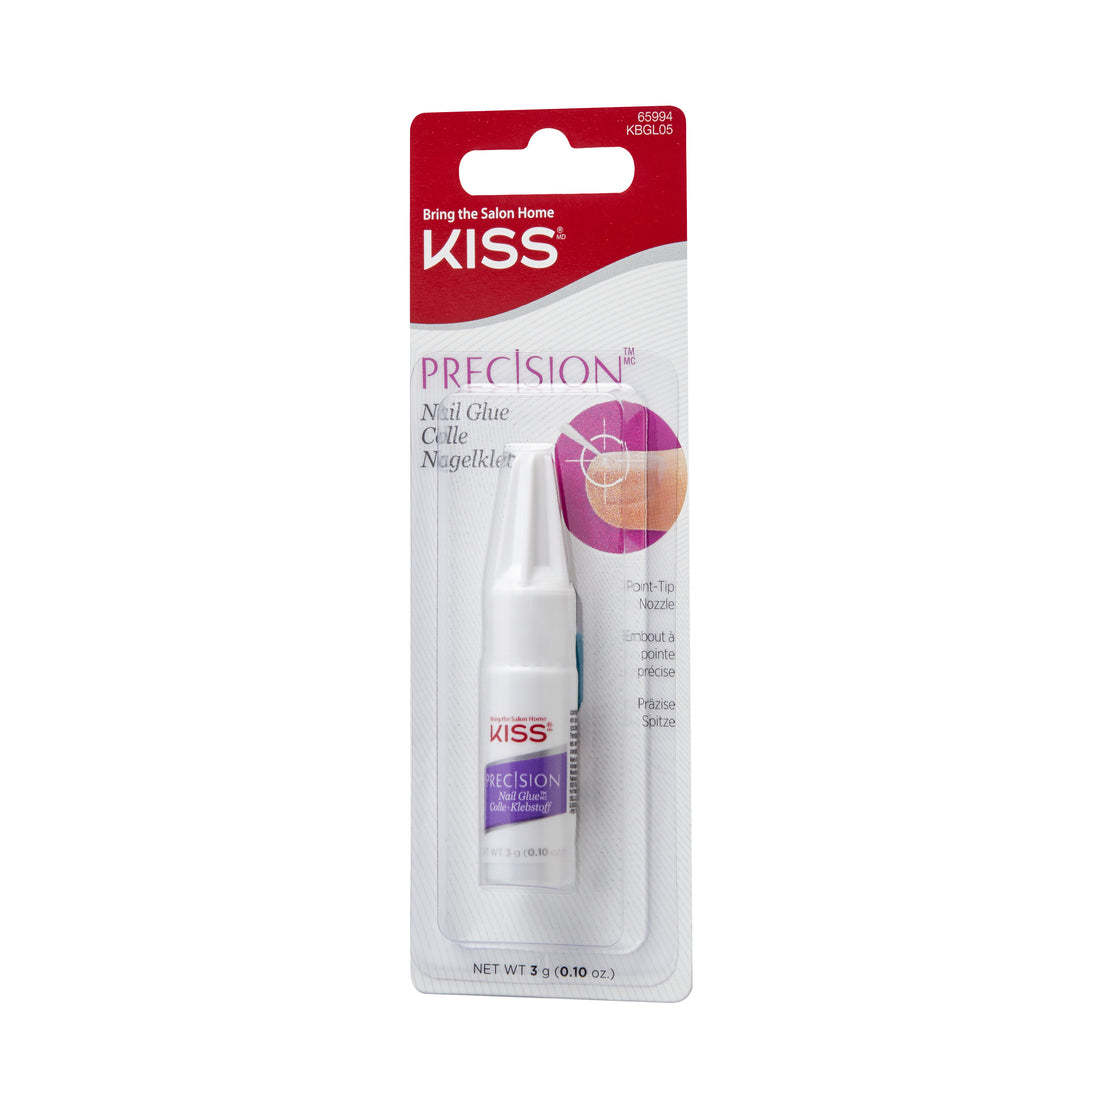 KISS Precision Nail Glue, Net Wt. 3g (0.10 oz.)